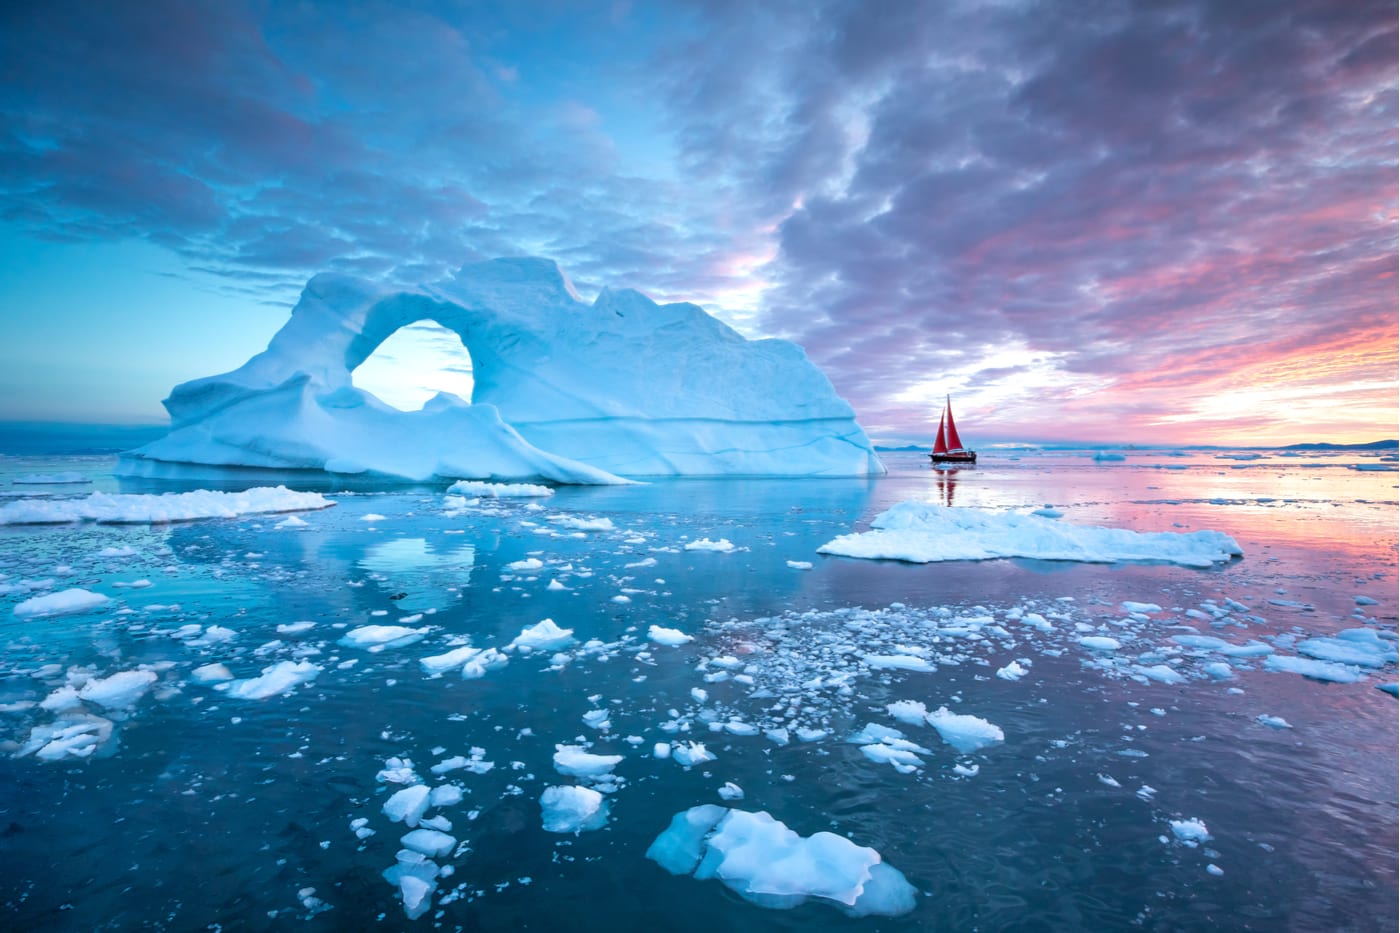 在格陵兰岛环绕冰山航行